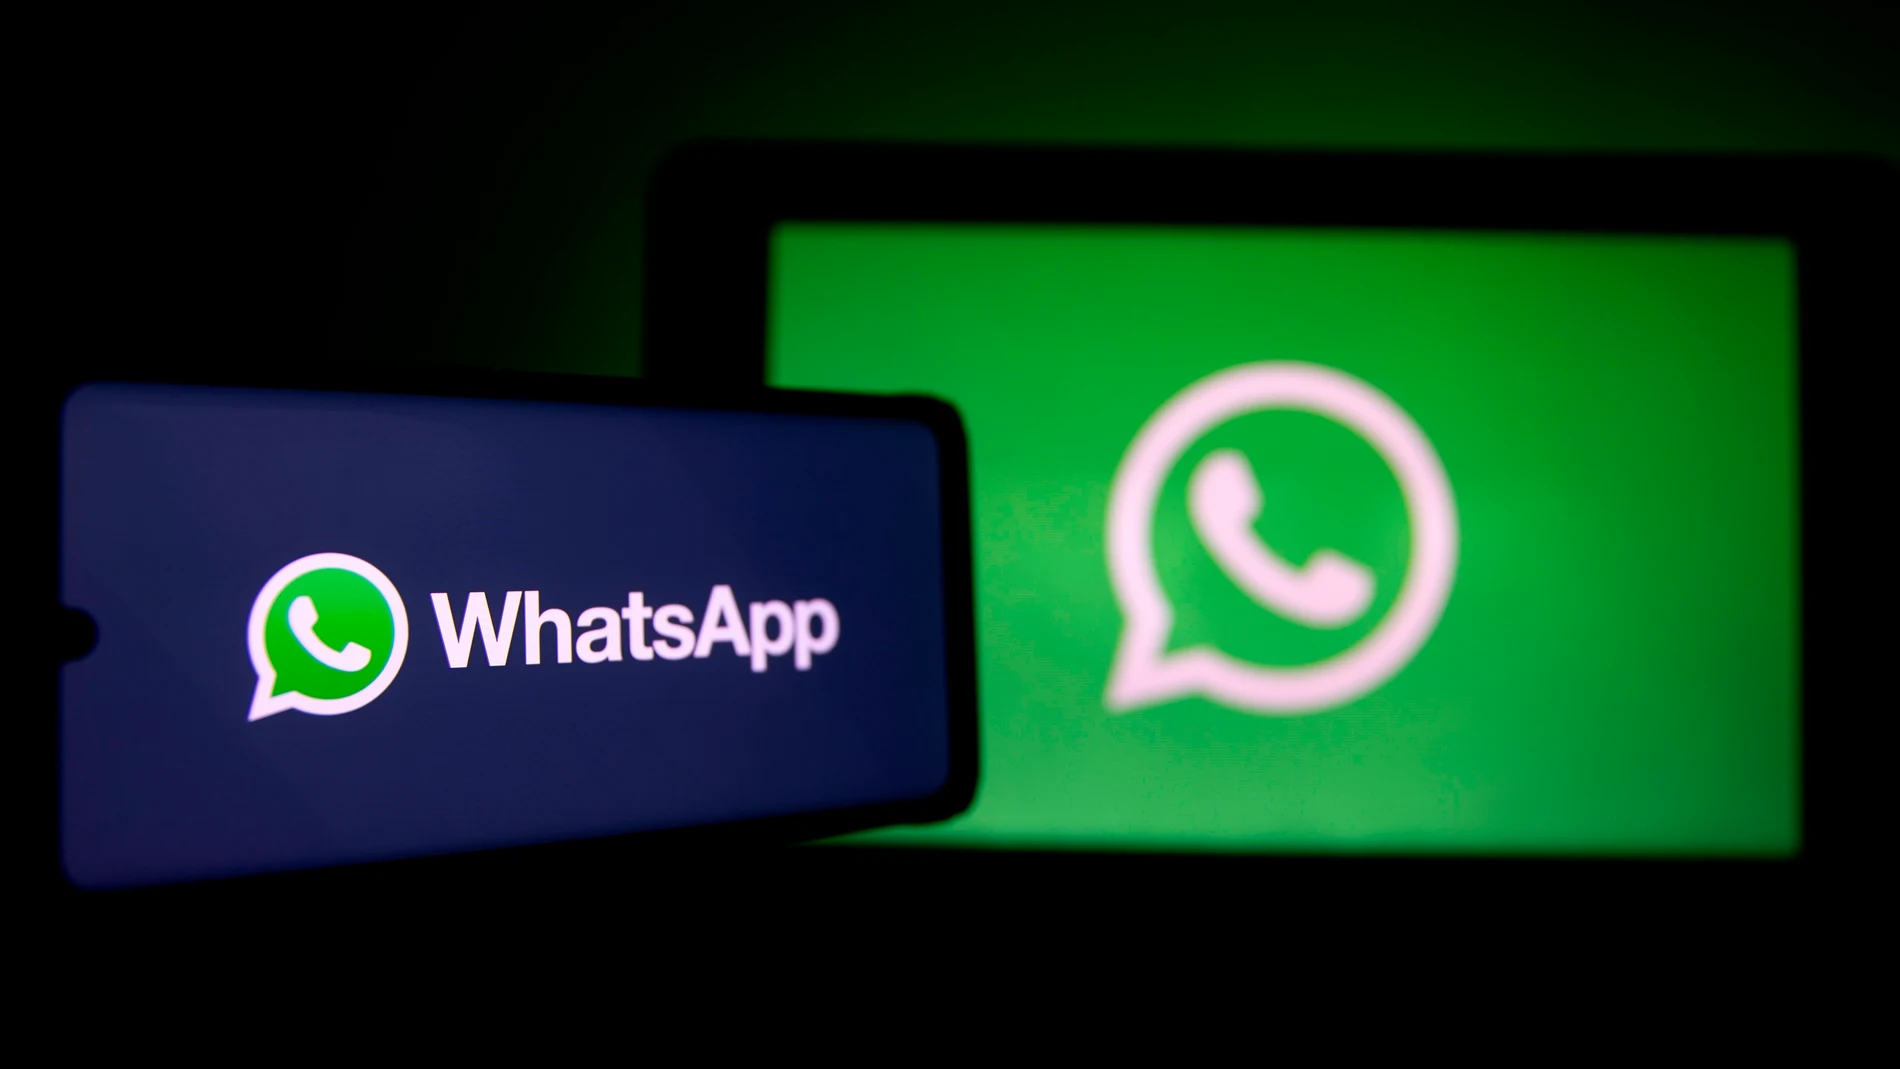 WhatsApp y su logo en dos pantallas